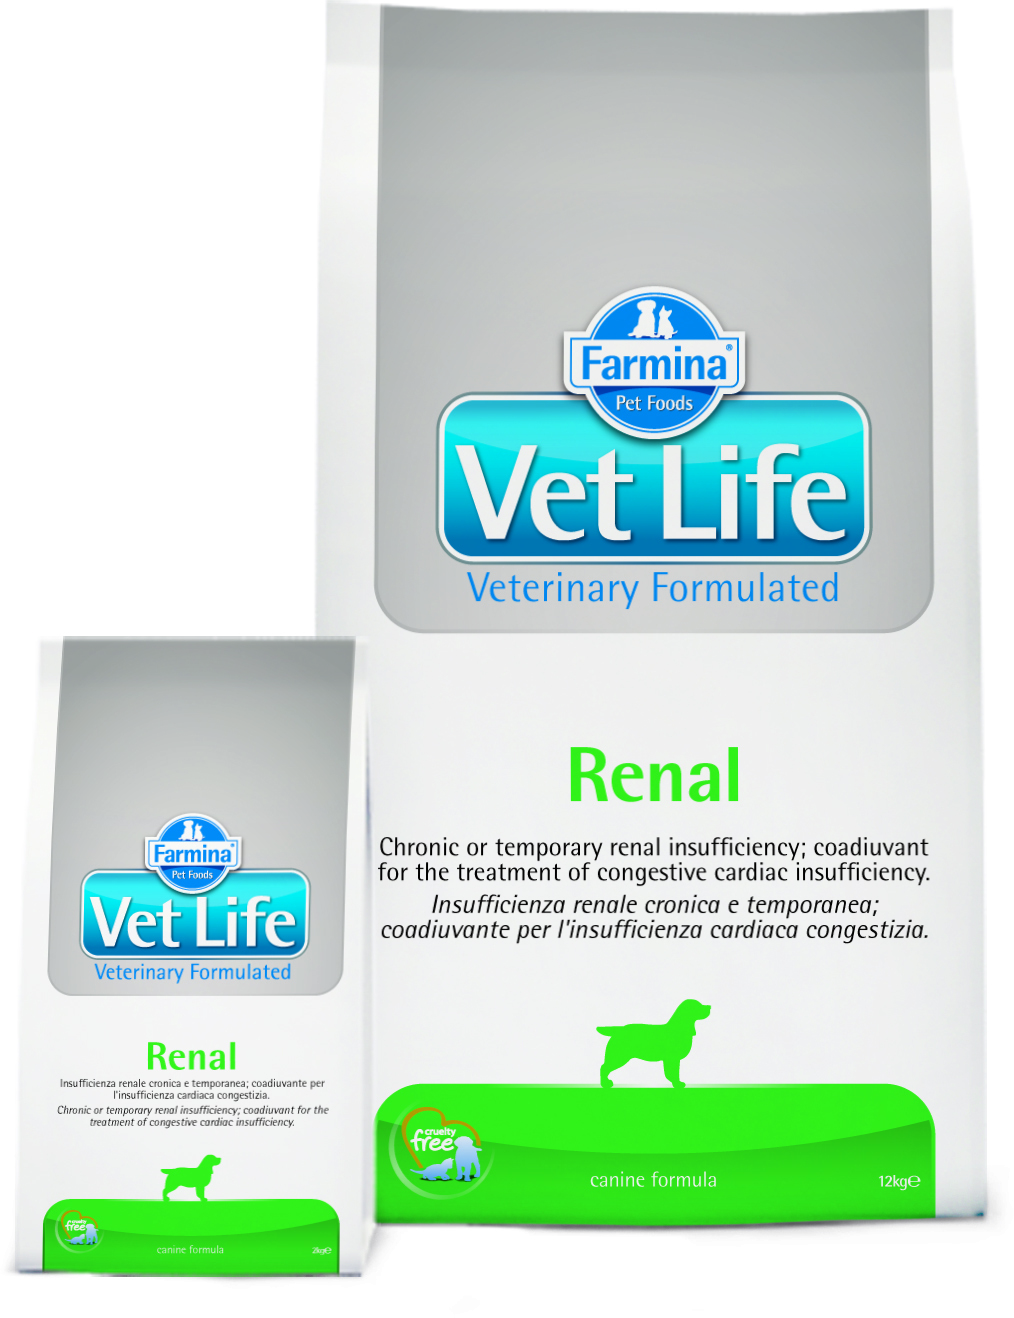 Корм vet life renal. Farmina vet Life Dog renal 2 кг. Farmina vet Life renal. Сухой корм для собак Farmina vet Life renal, при заболеваниях почек 2 кг. Vet Life корм renal для собак.